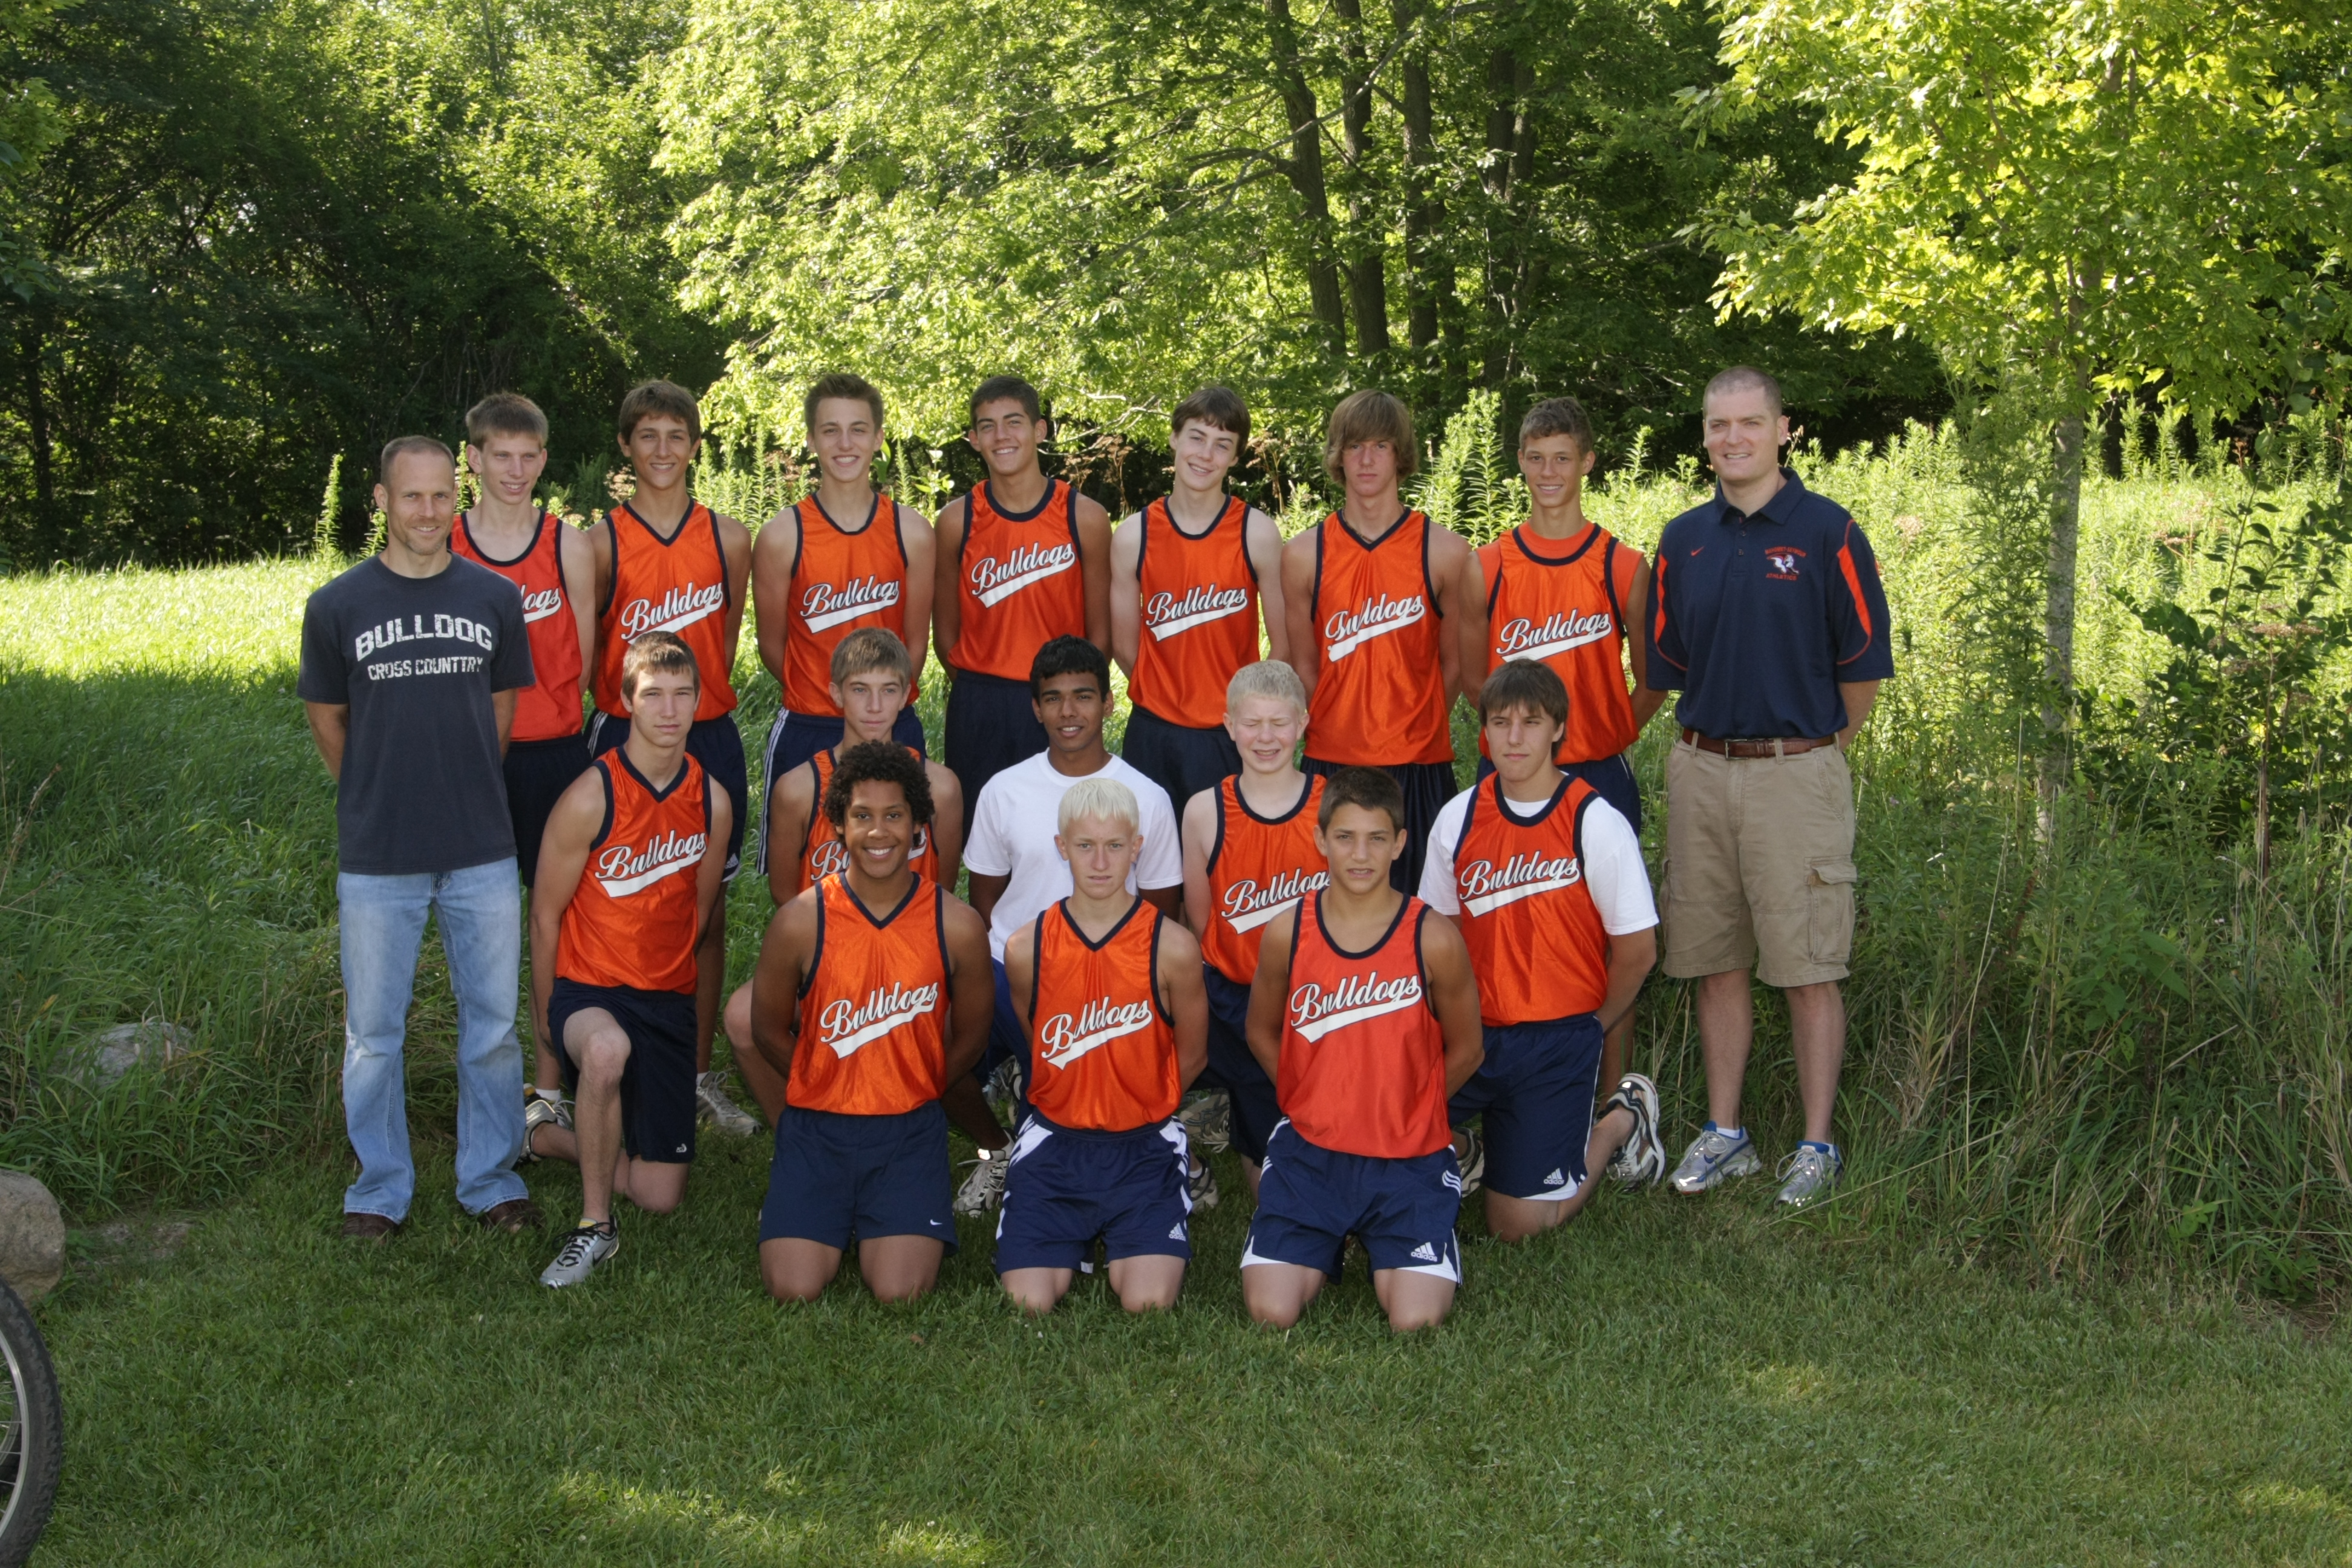 2008 Team Picture